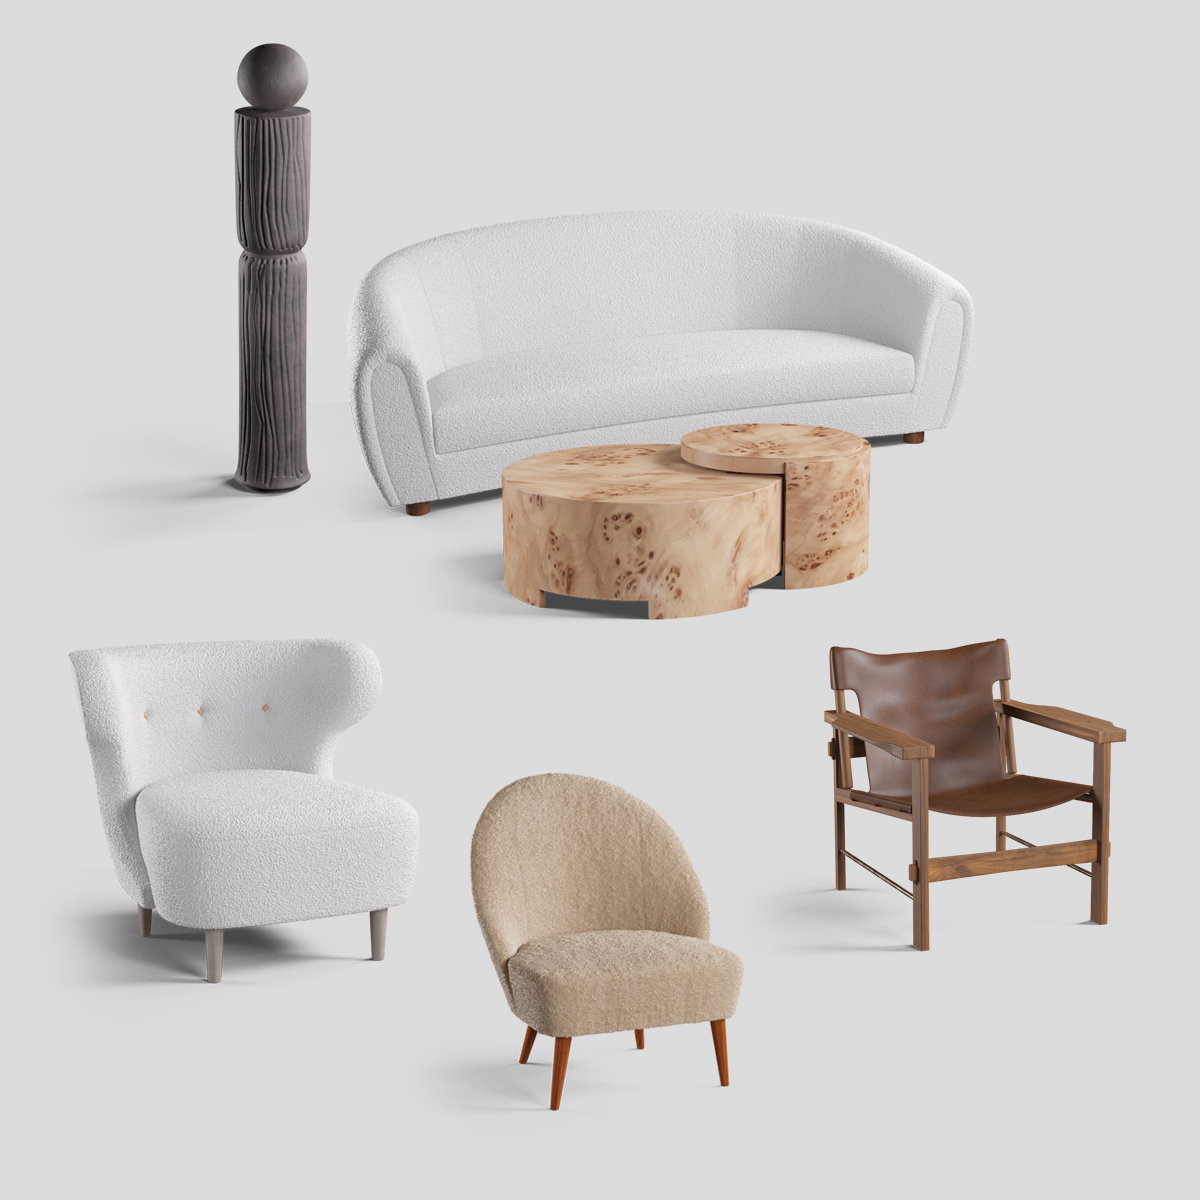 furniture visualization